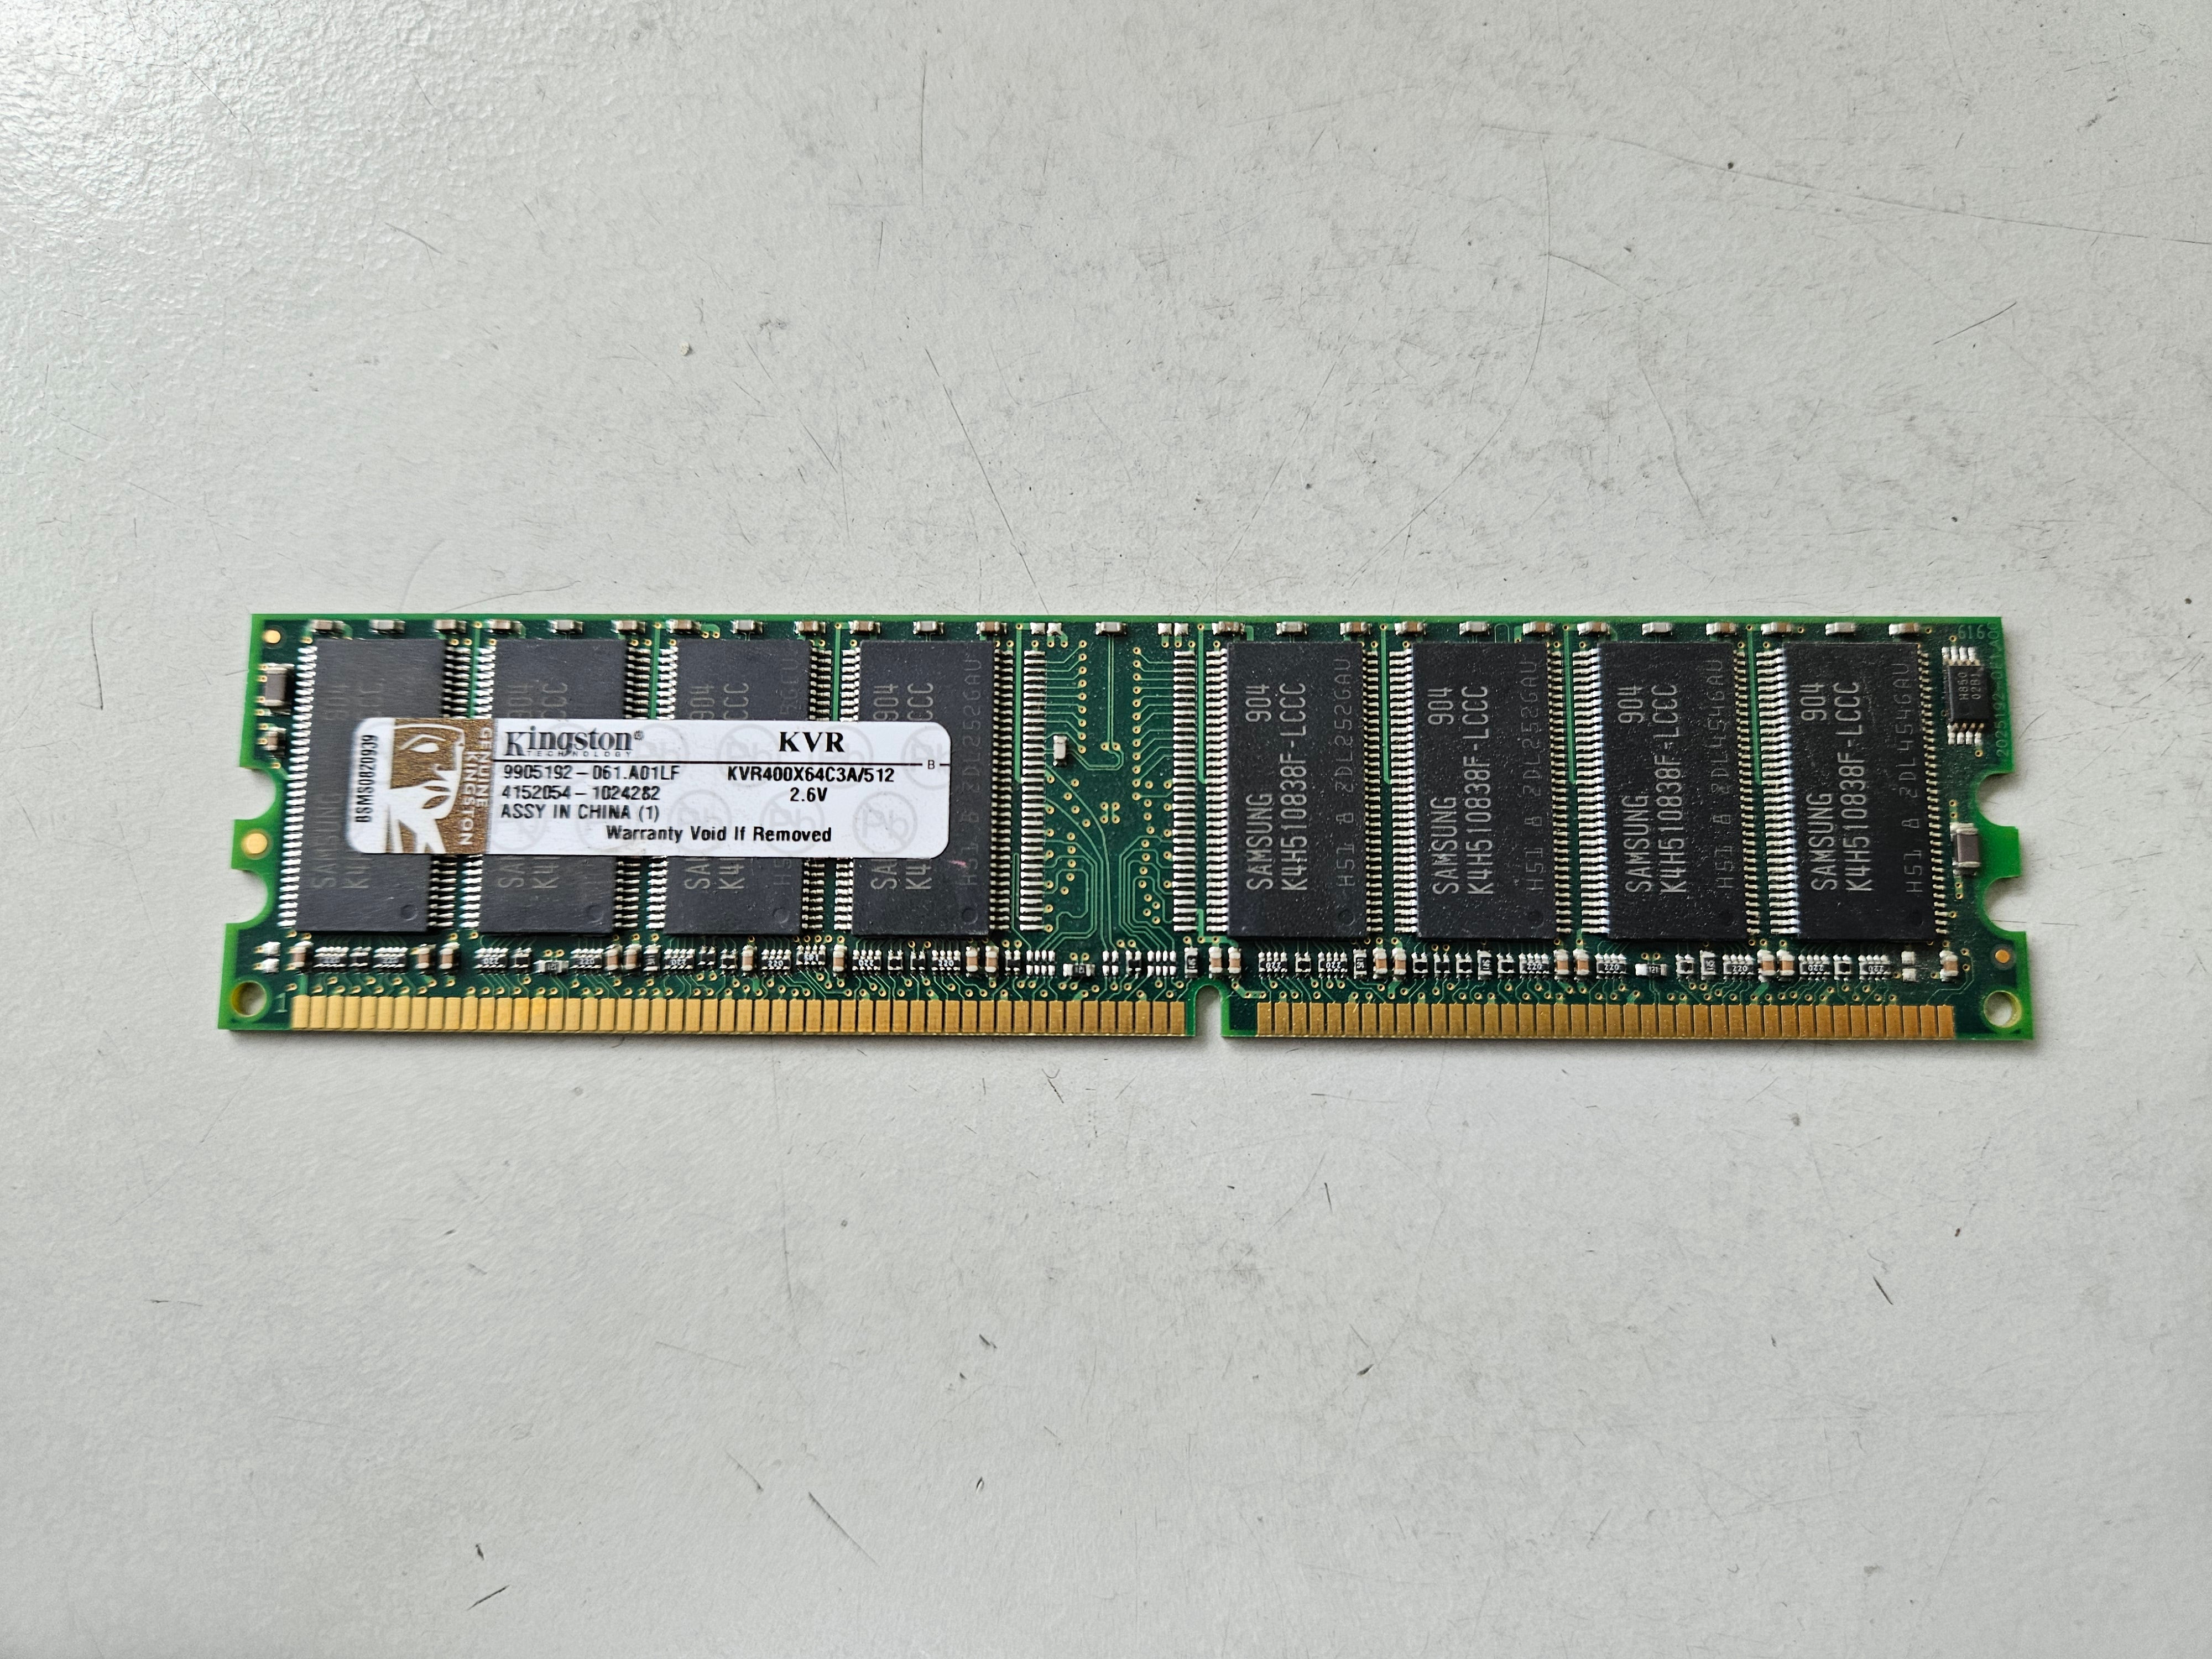 Kingston 512MB PC3200 DDR-400MHz CL3 DIMM ( KVR400X64C3A/512 99U5193-061.A01LF ) REF